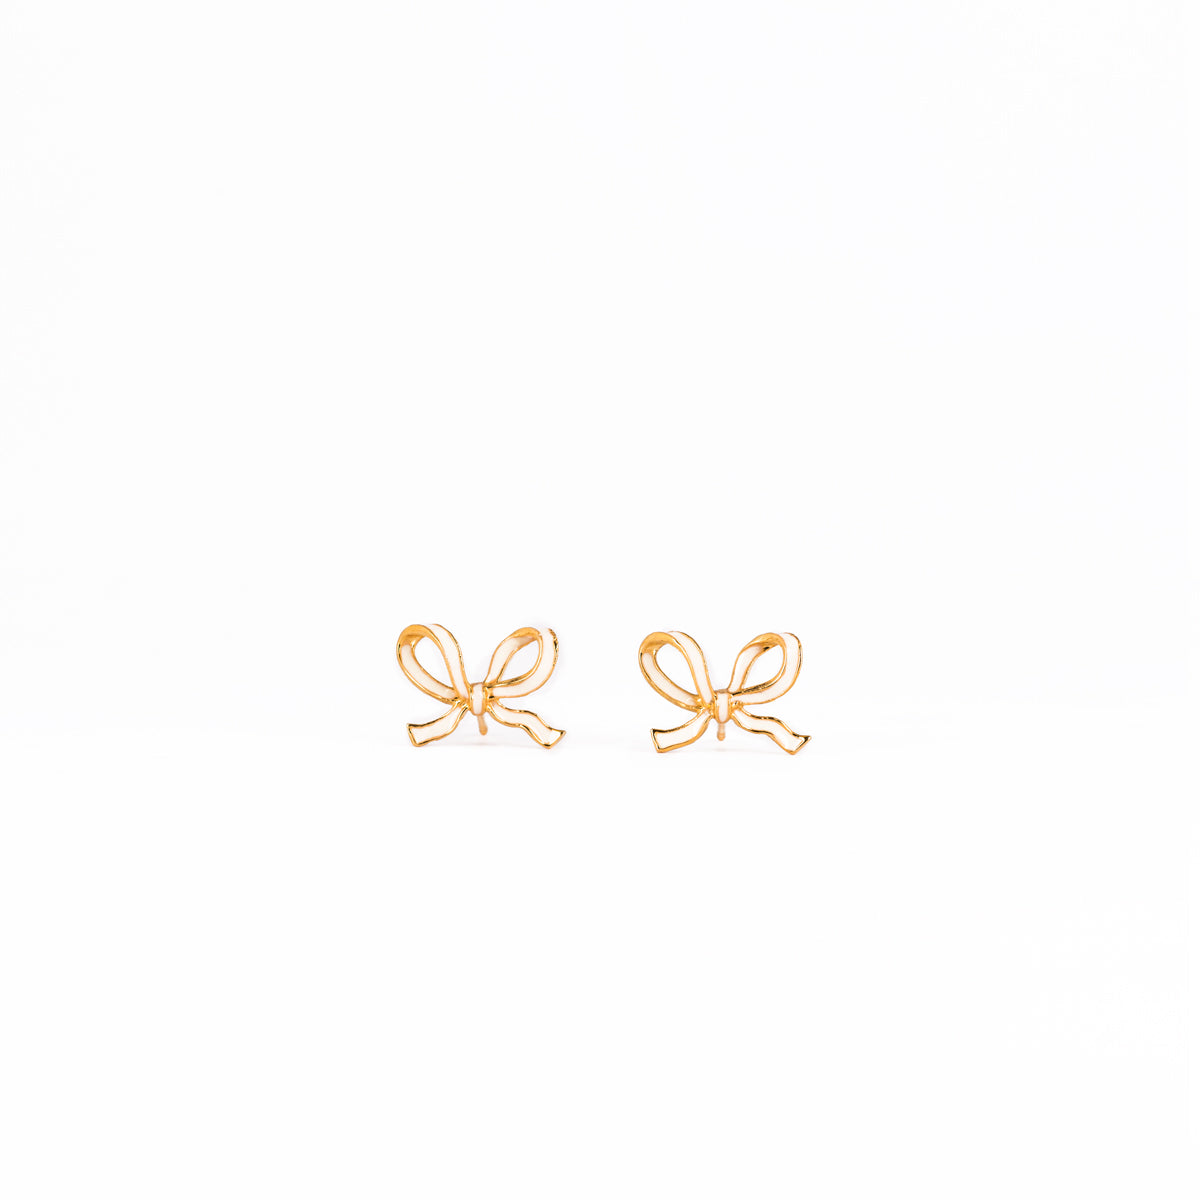 Little Bow earrings - Ivory